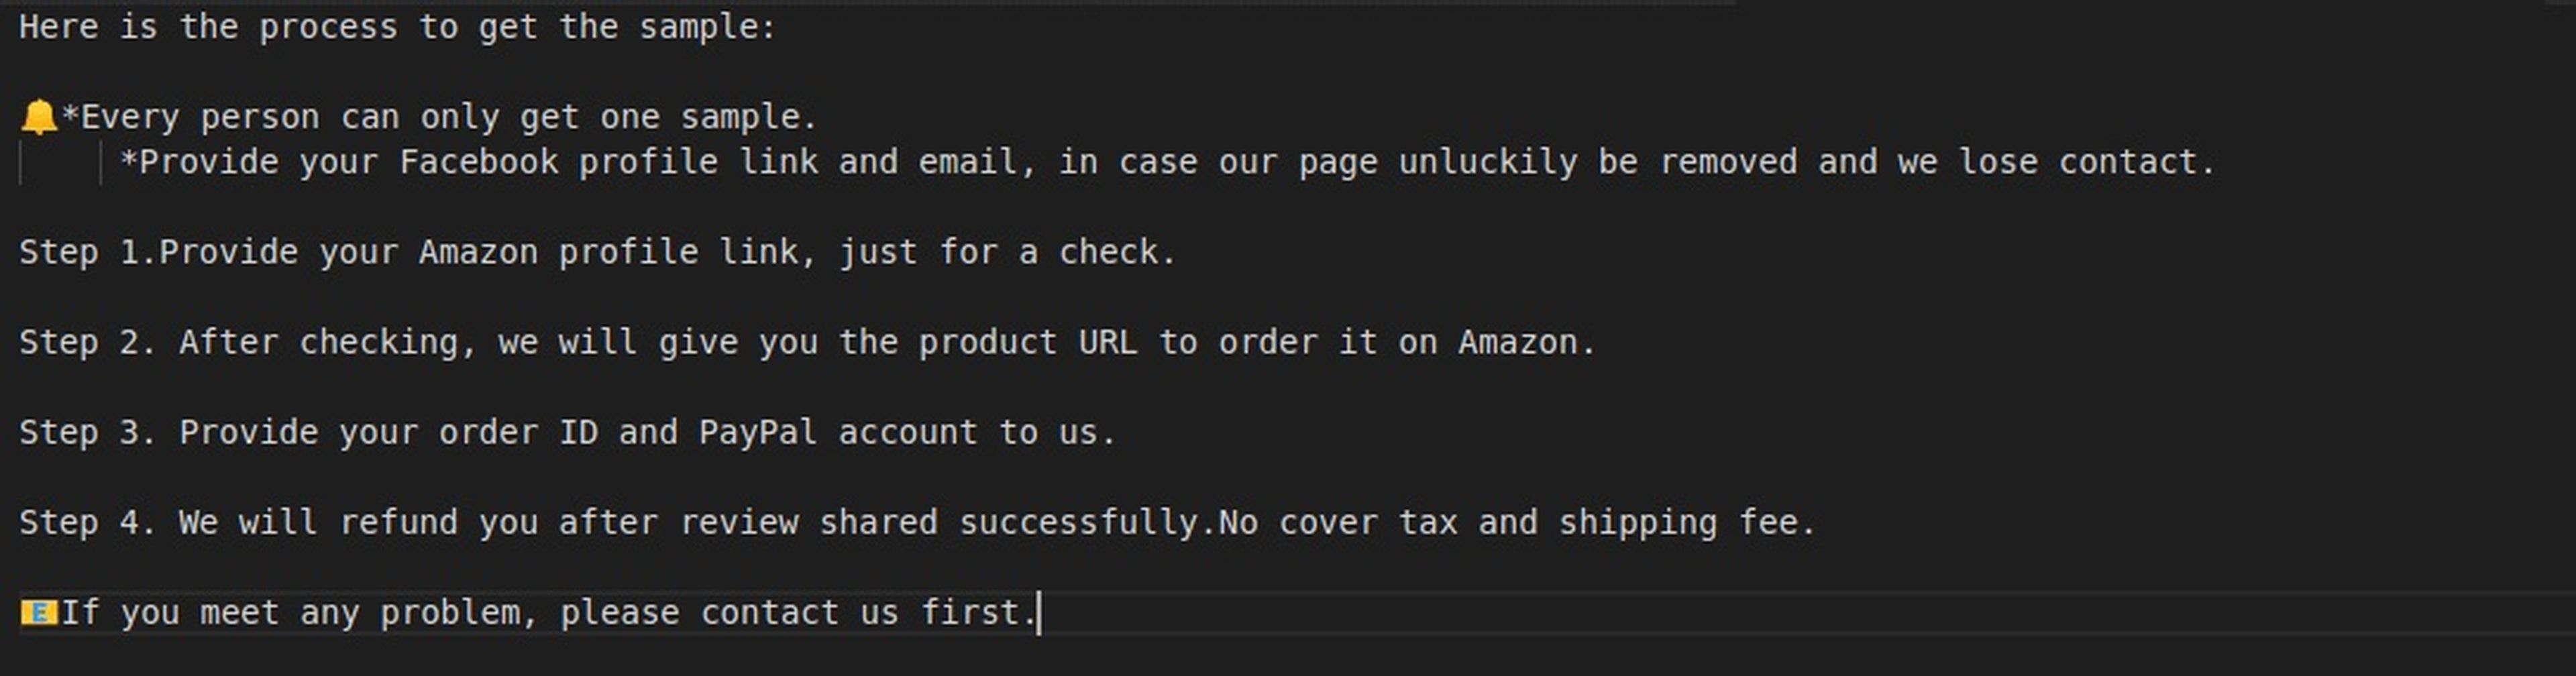 Instrucciones de vendedores de Amazon a usuarios para recibir críticas falsas.